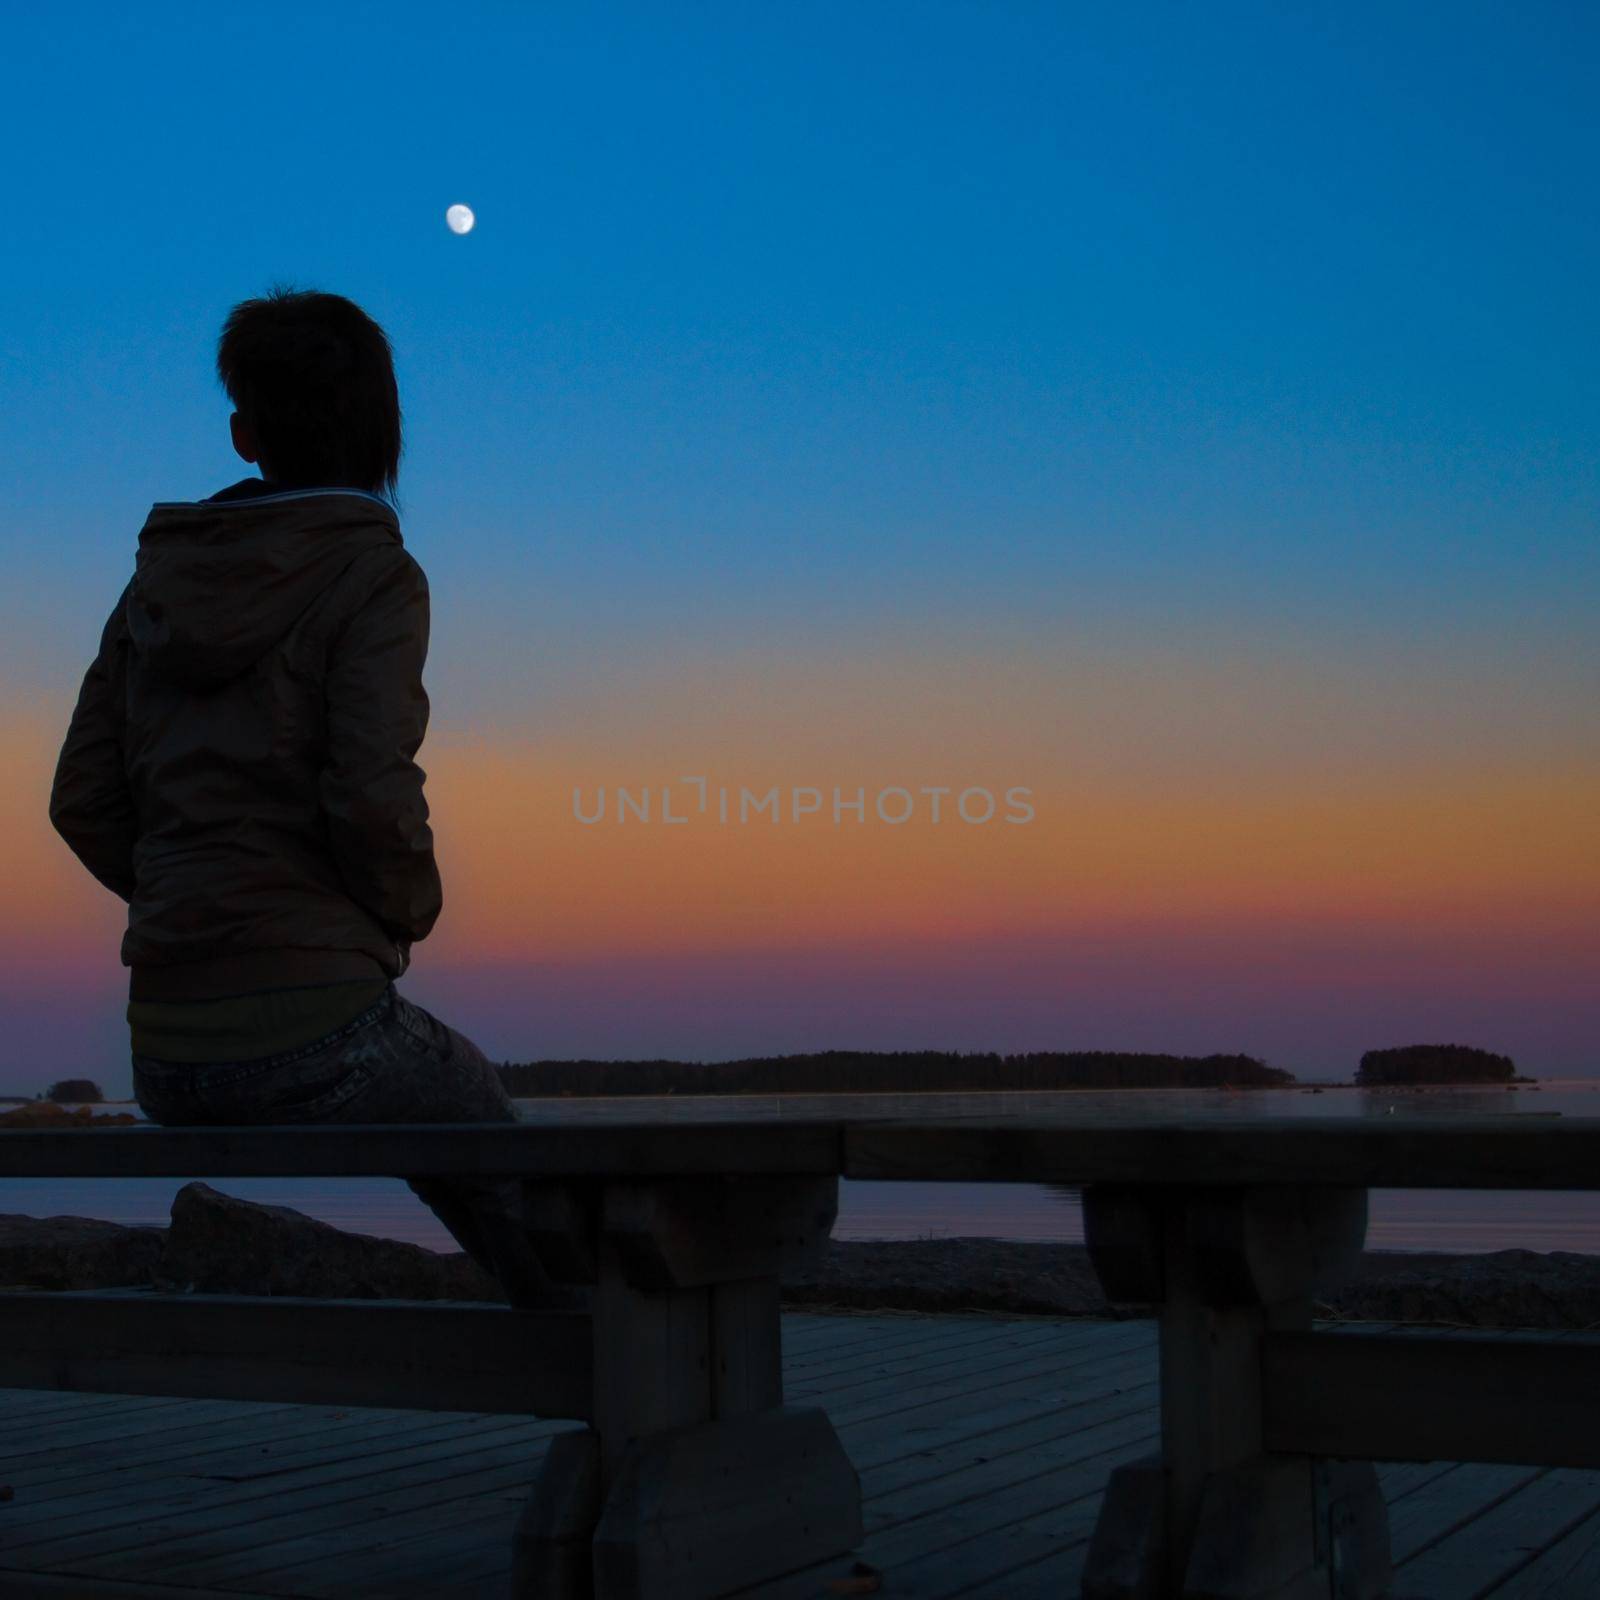 Woman enjoying the silence during a wonderful sunset by alexAleksei